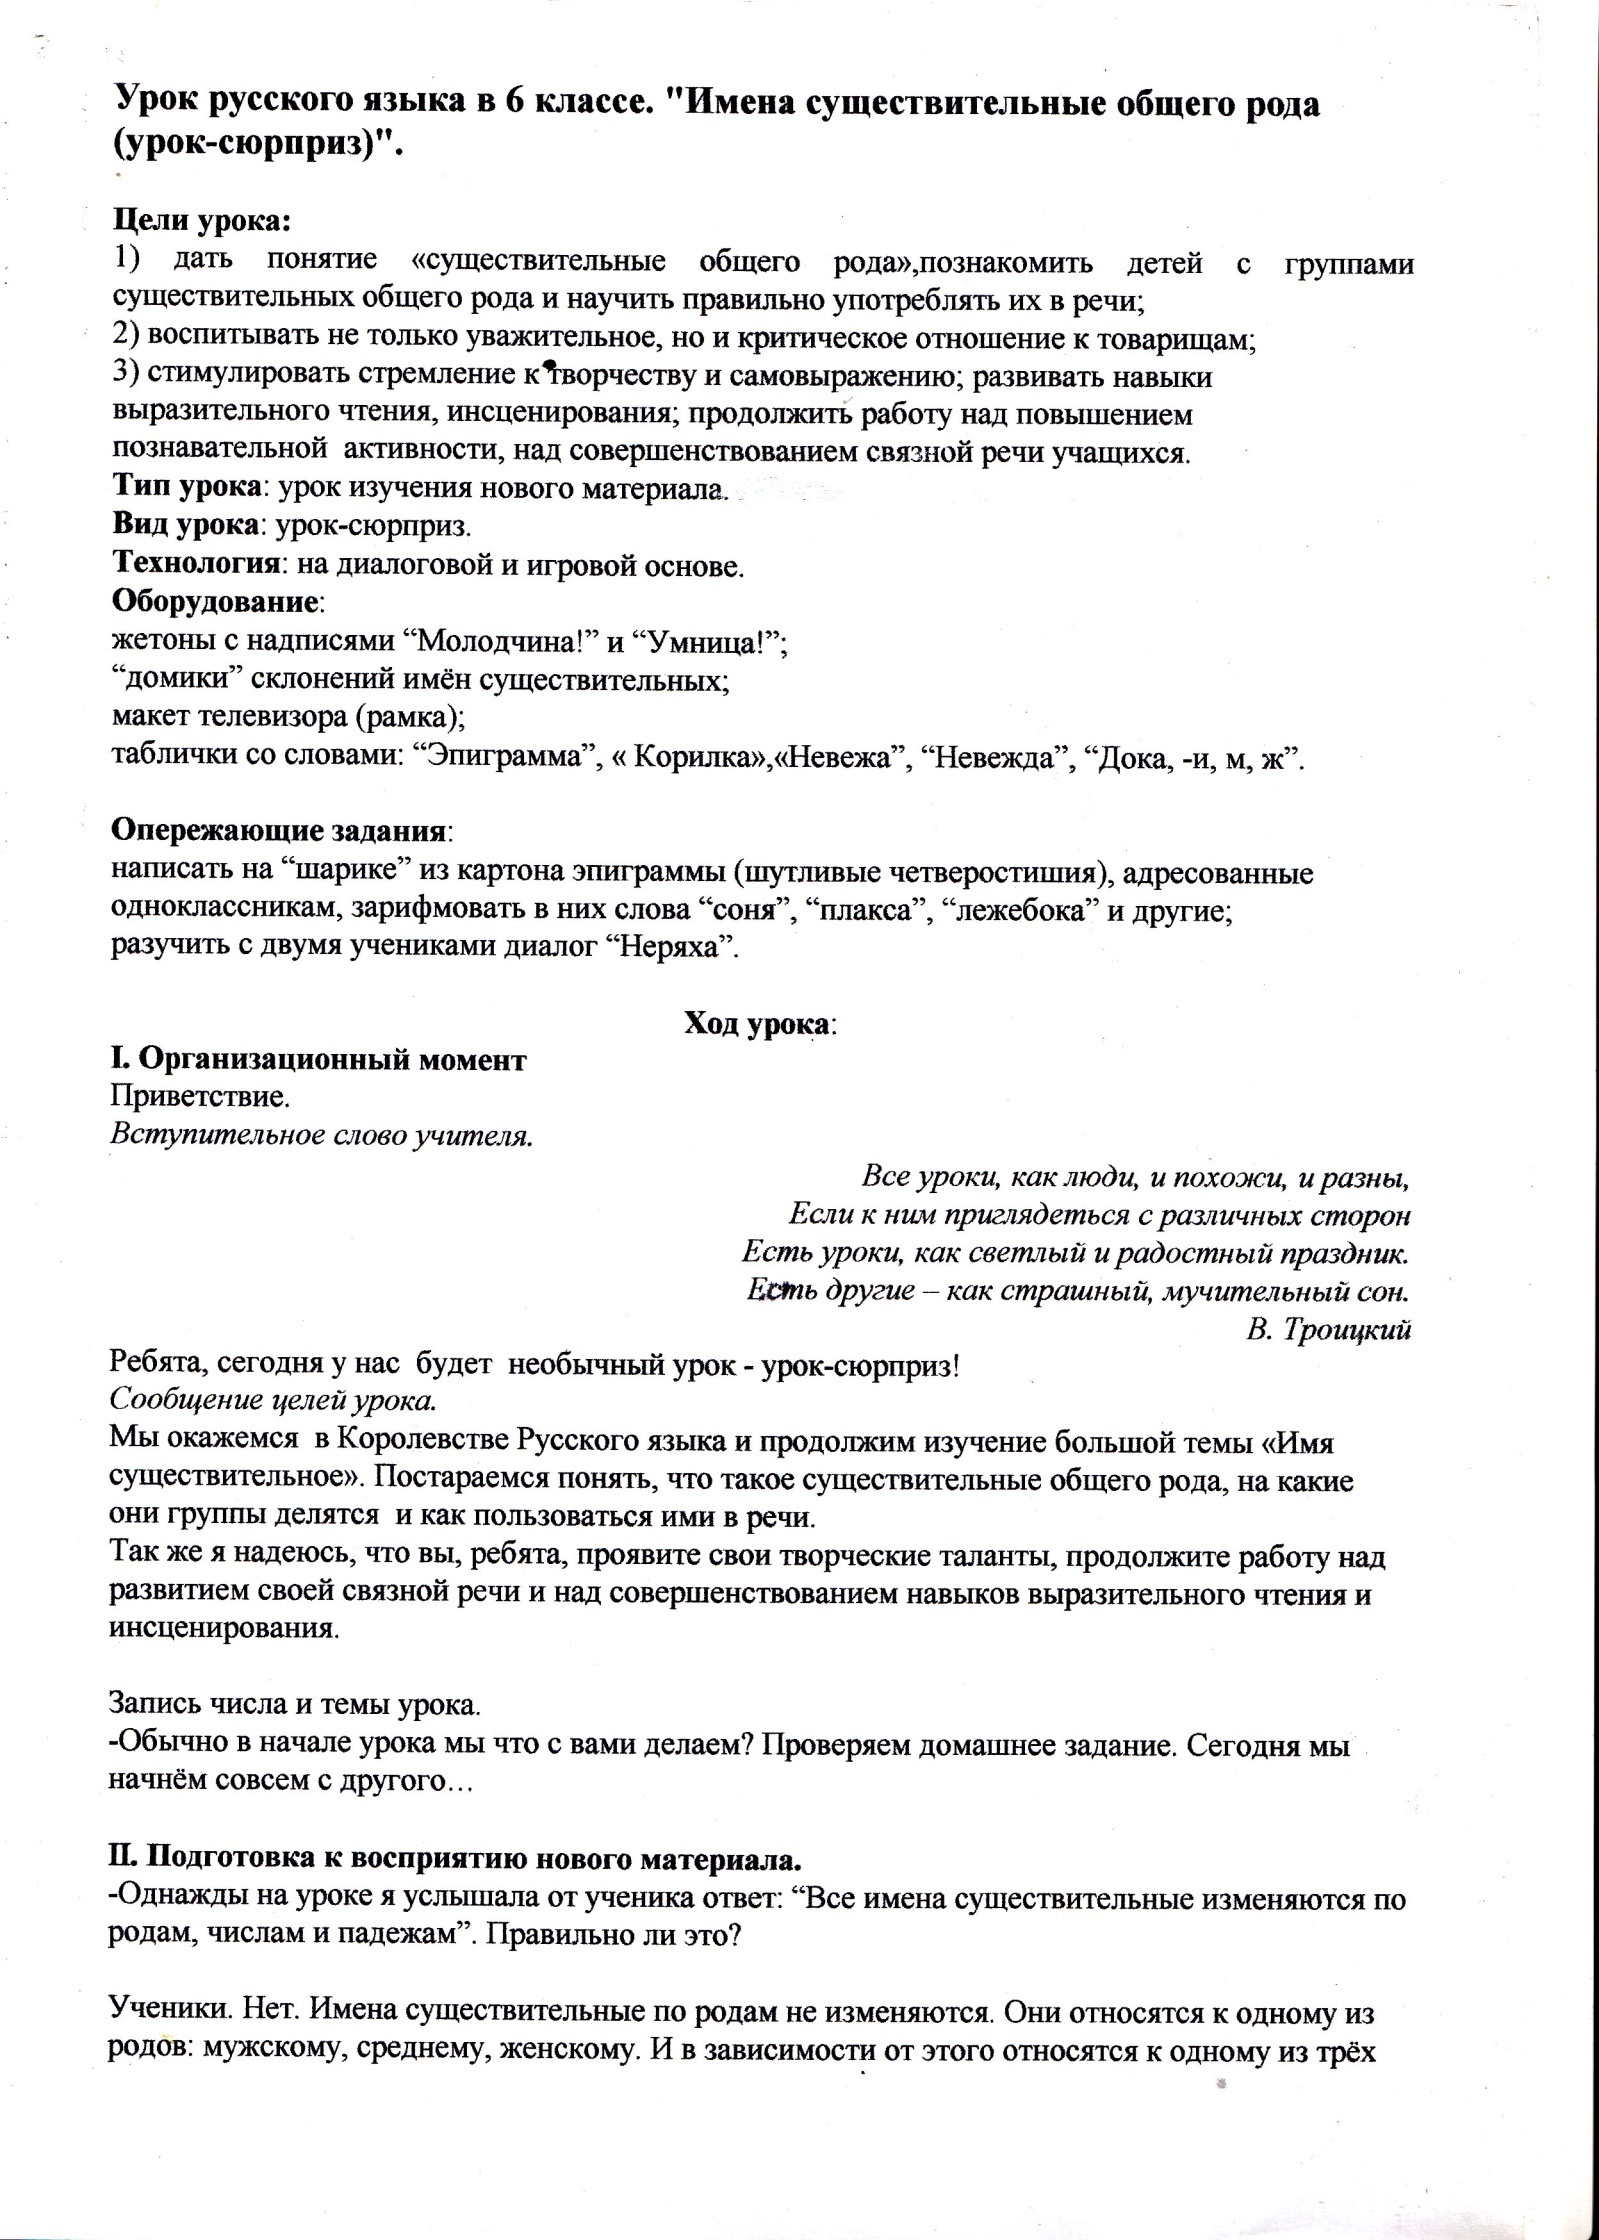 Конспект урока русского языка по теме Имена существительные общего рода (урок-сюрприз) (6 класс)